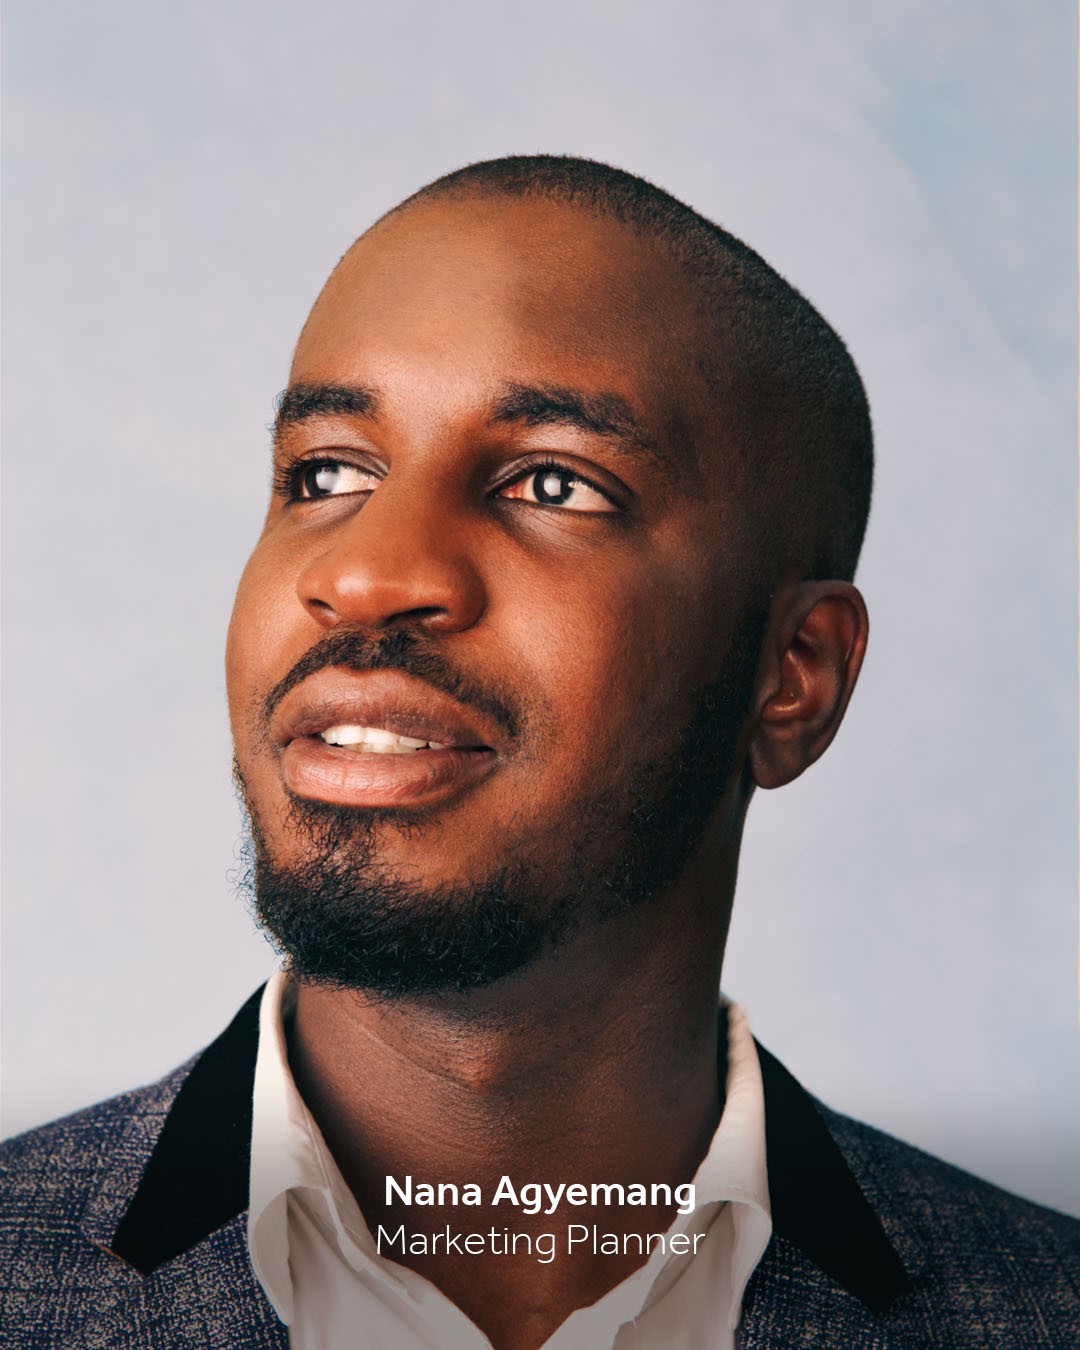 Nana Agyemang, Marketing Planner